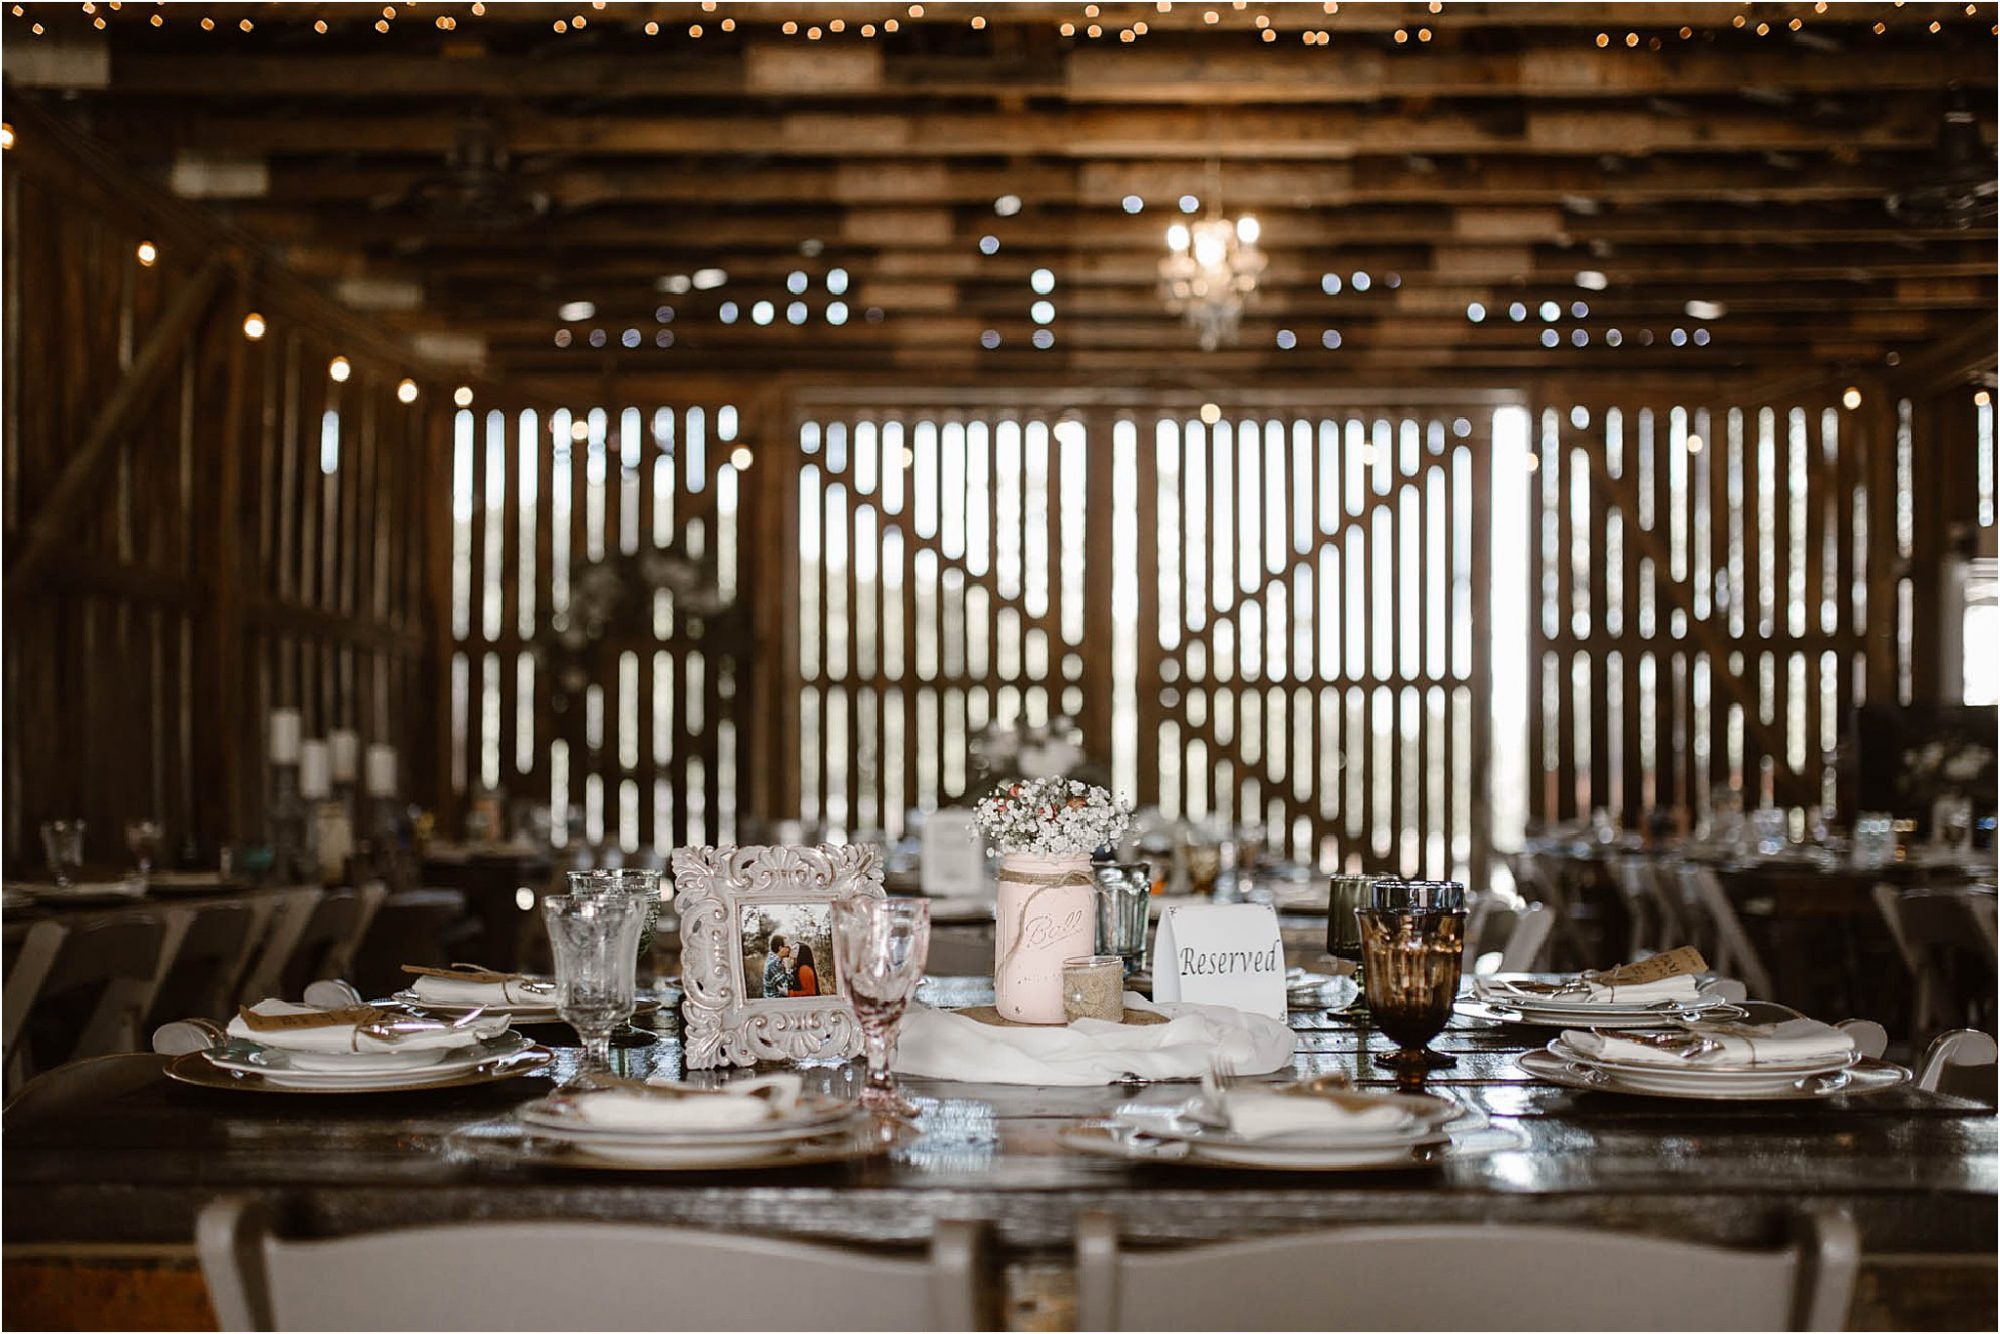 Tablescape photo of rustic glam reception decor